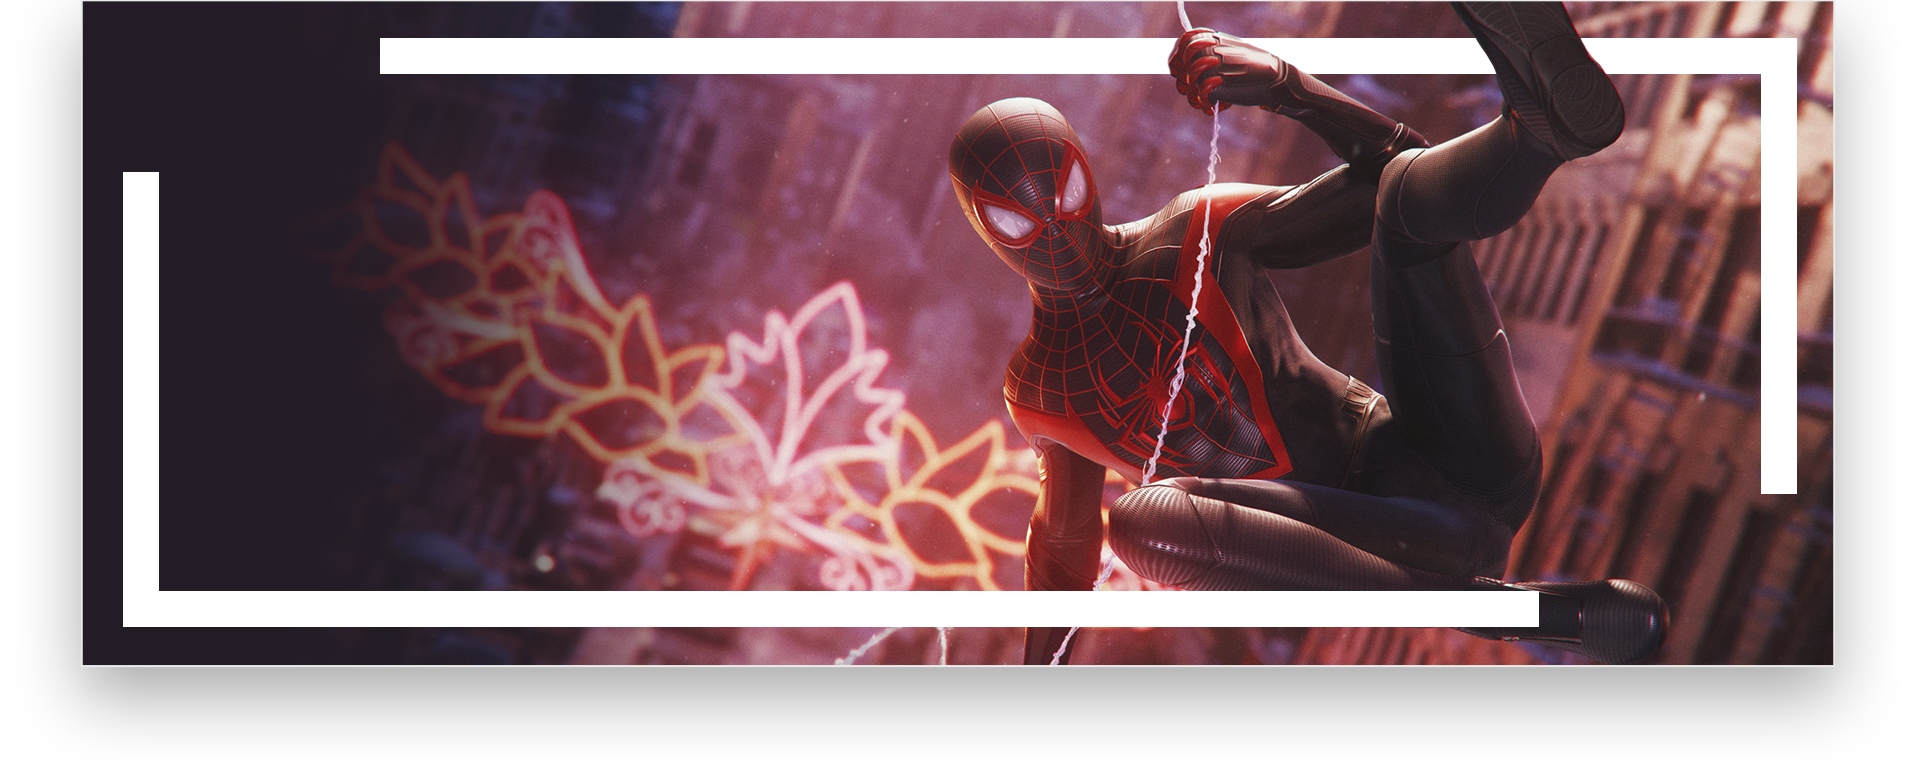 الصورة الفنية الأساسية لـ Spiderman